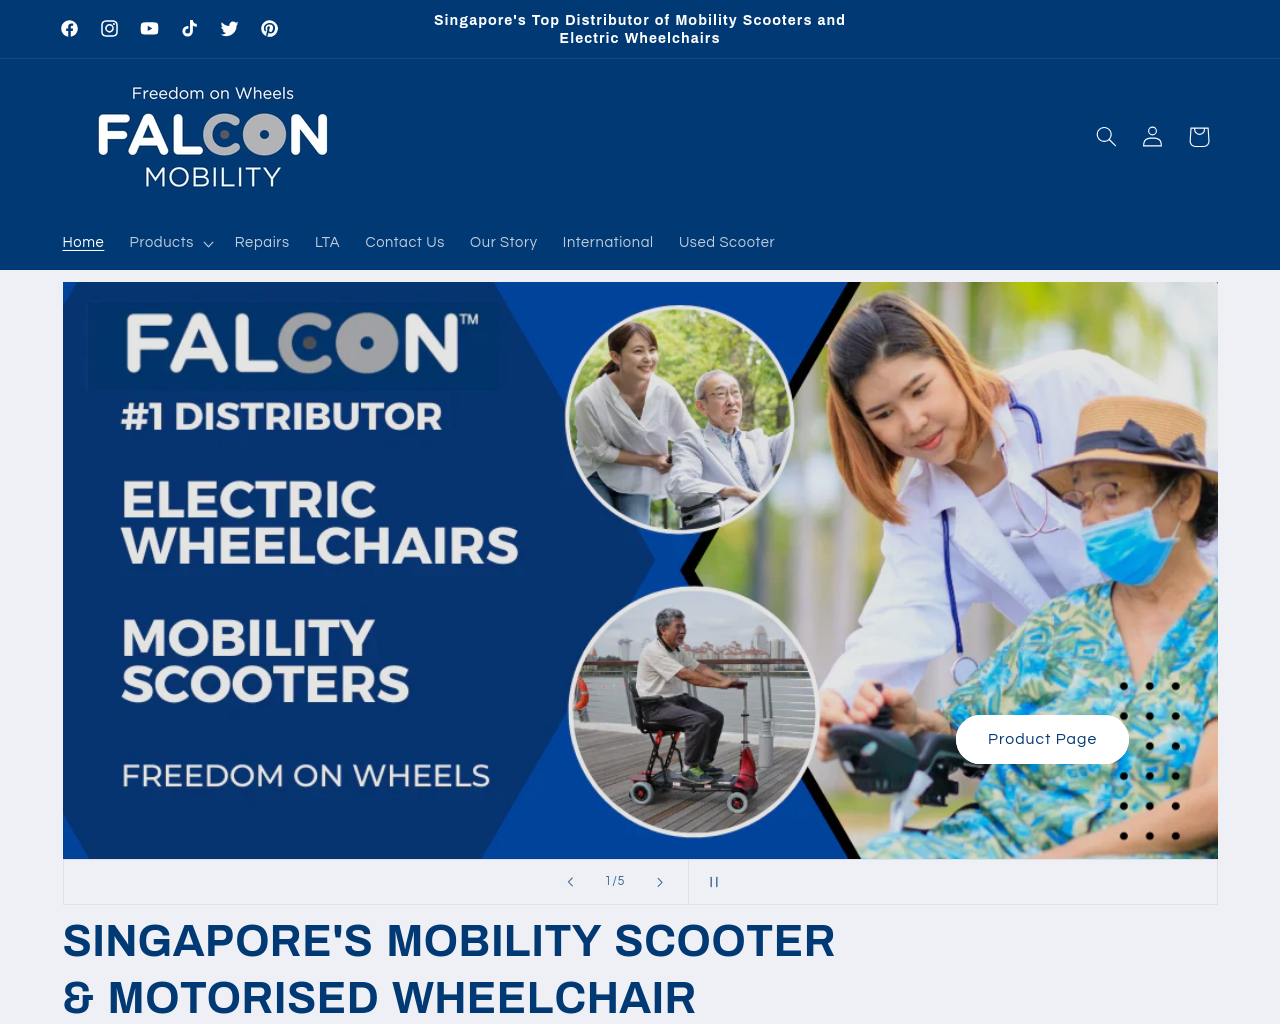 www.falconmobility.com.sg